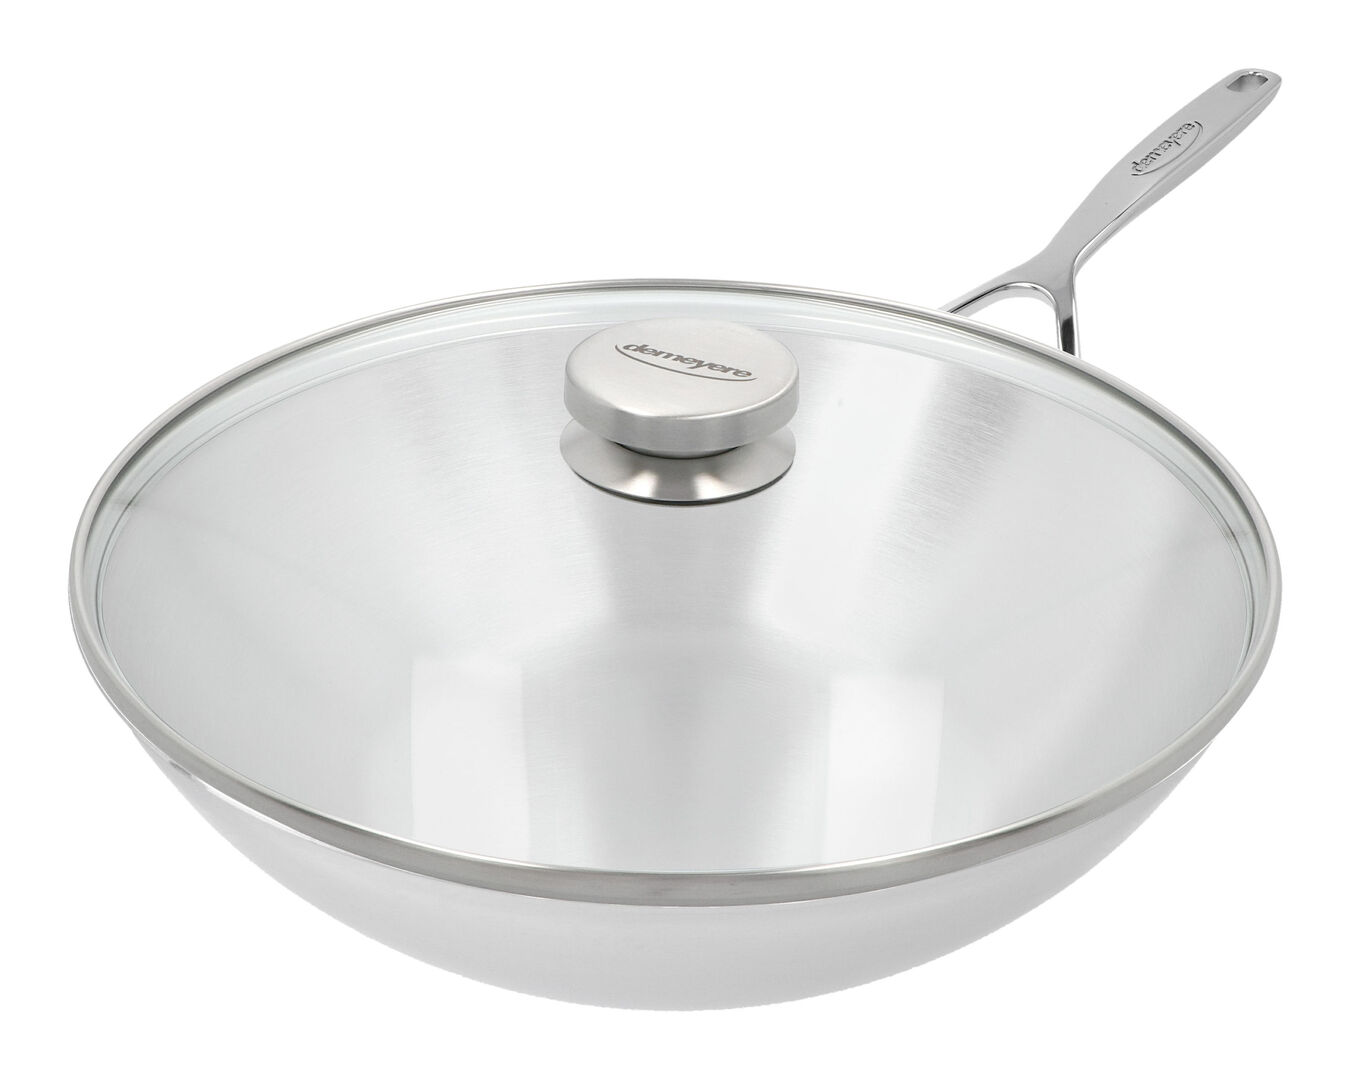 Achternaam dik zout Demeyere - Intense 5 wok 30 cm - met gratis deksel - K'OOK!